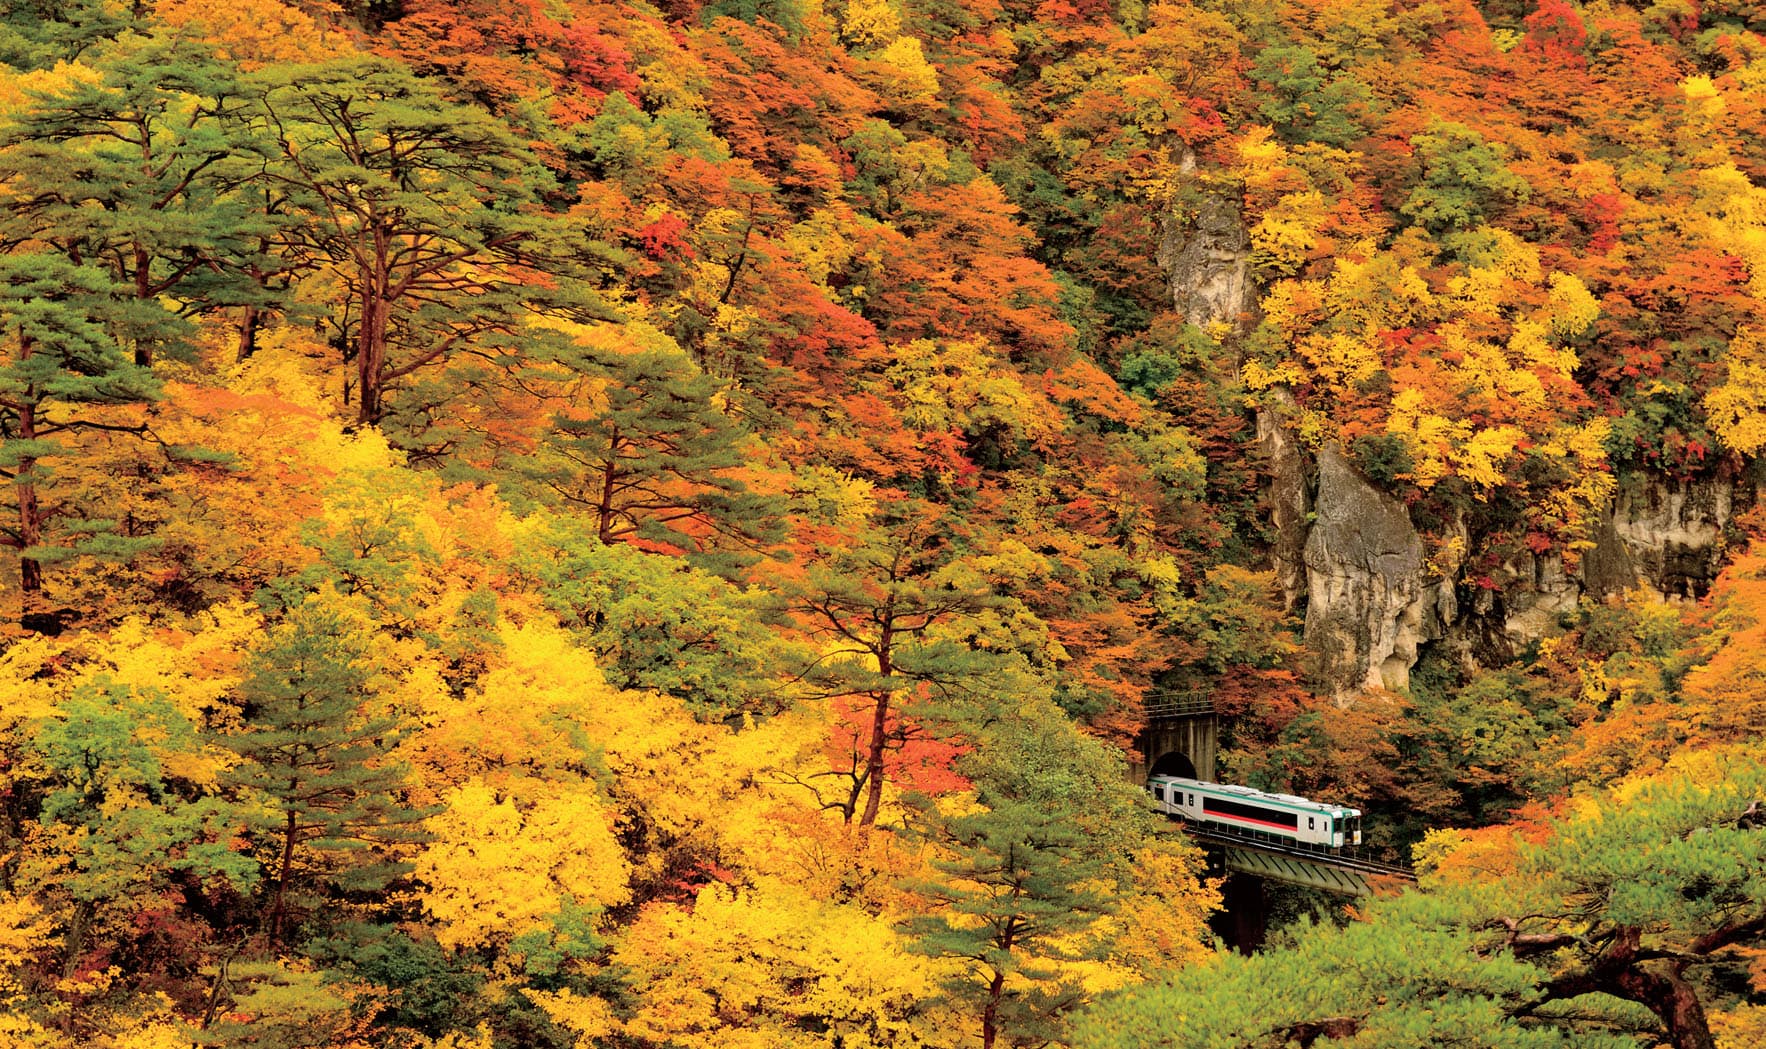 鳴子峡と陸羽東線。高さ約100mのV字型渓谷を囲む紅葉は、息をのむ美しさ （2010.11.1/陸羽東線 鳴子温泉駅～中山平温泉駅）